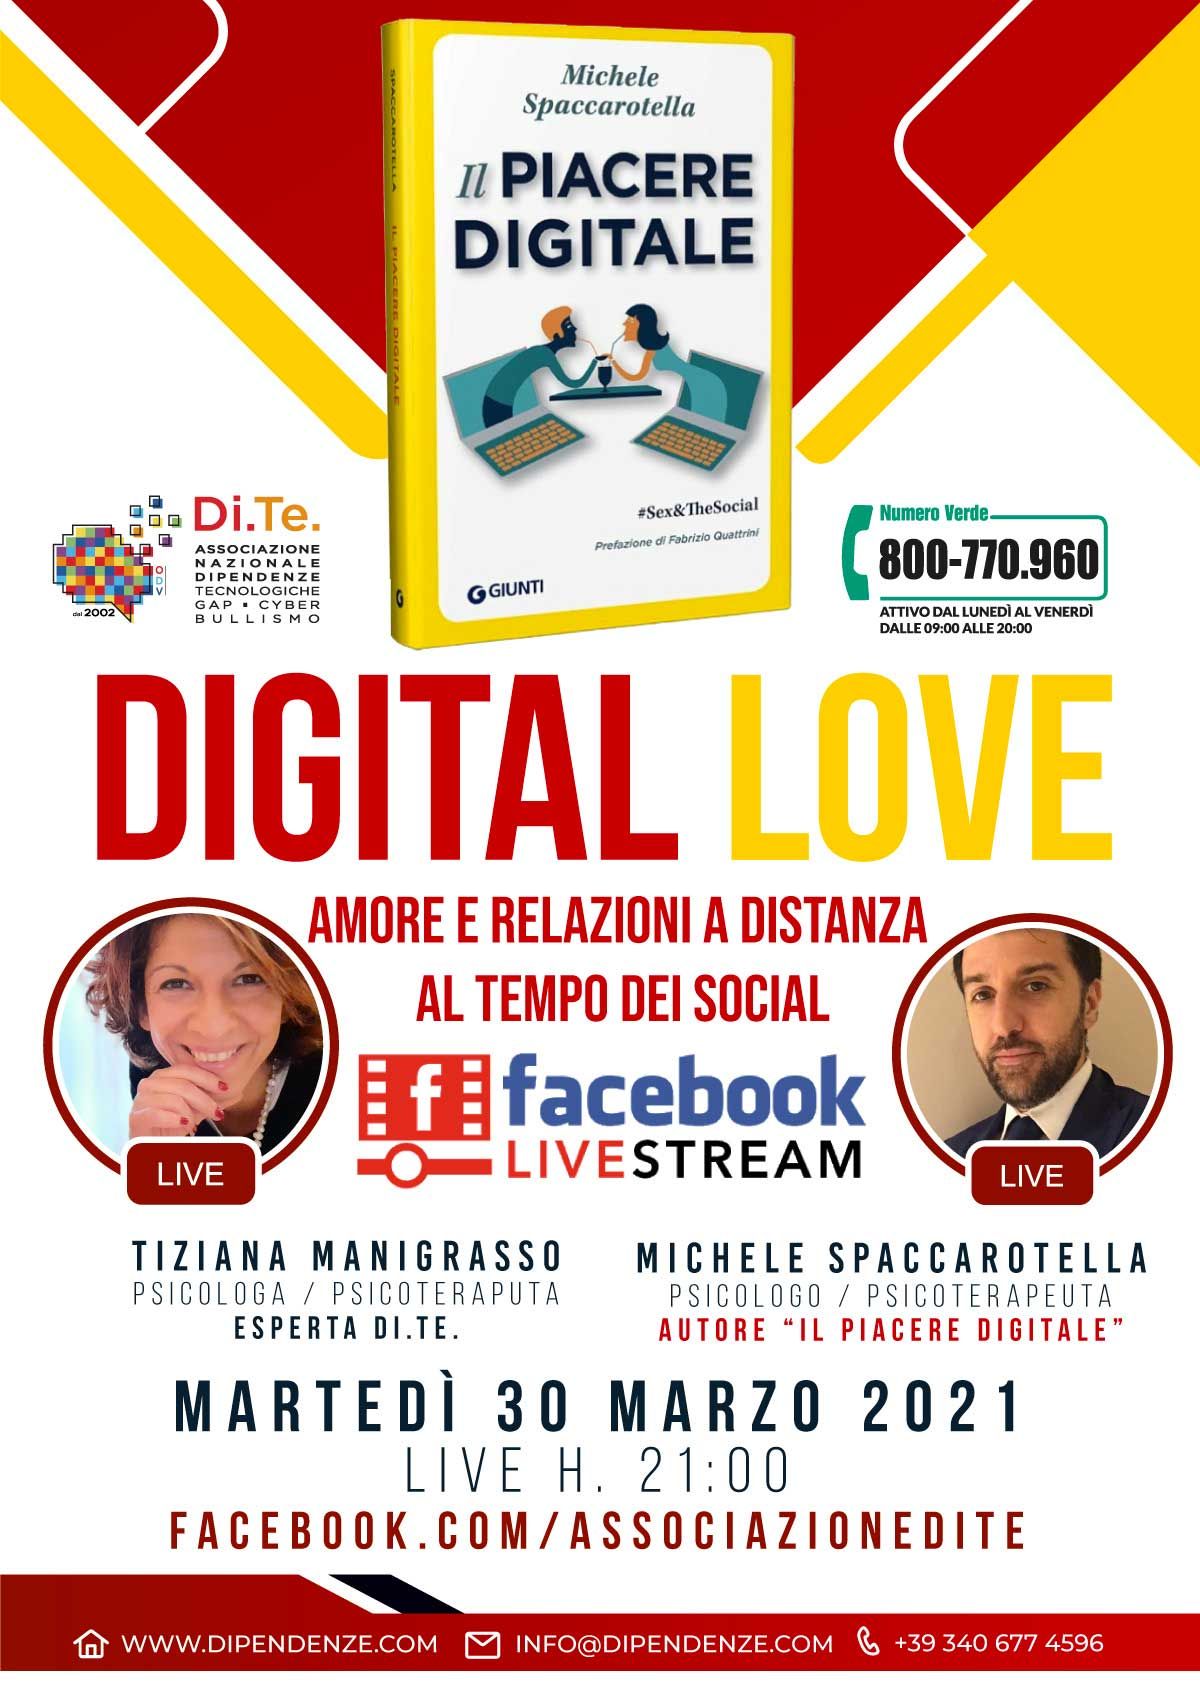 Digital love